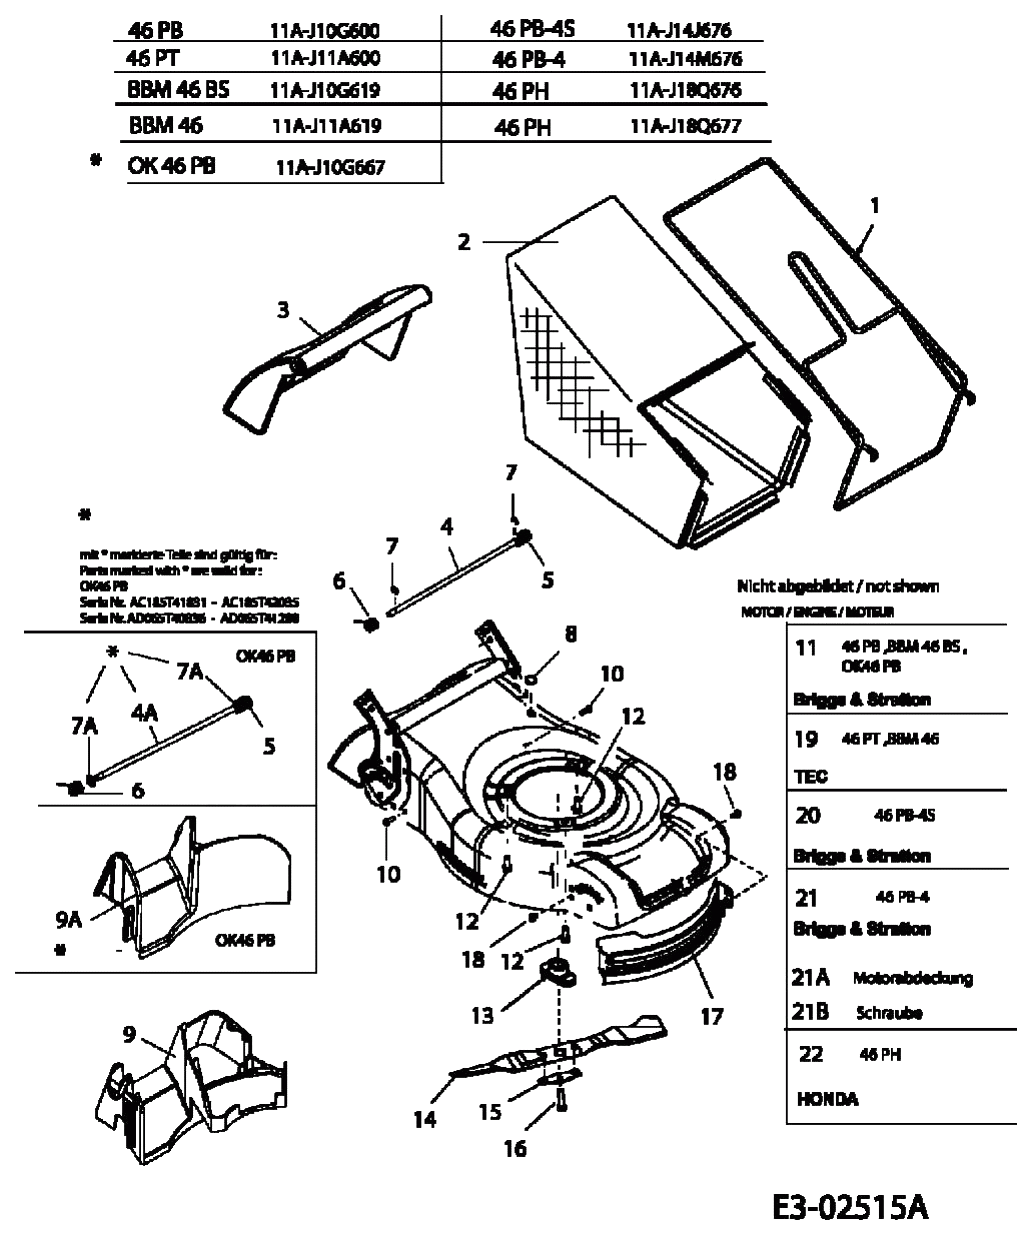 MTD Артикул 11A-J14M676 (год выпуска 2005). Травосборник, ножи, двигатель